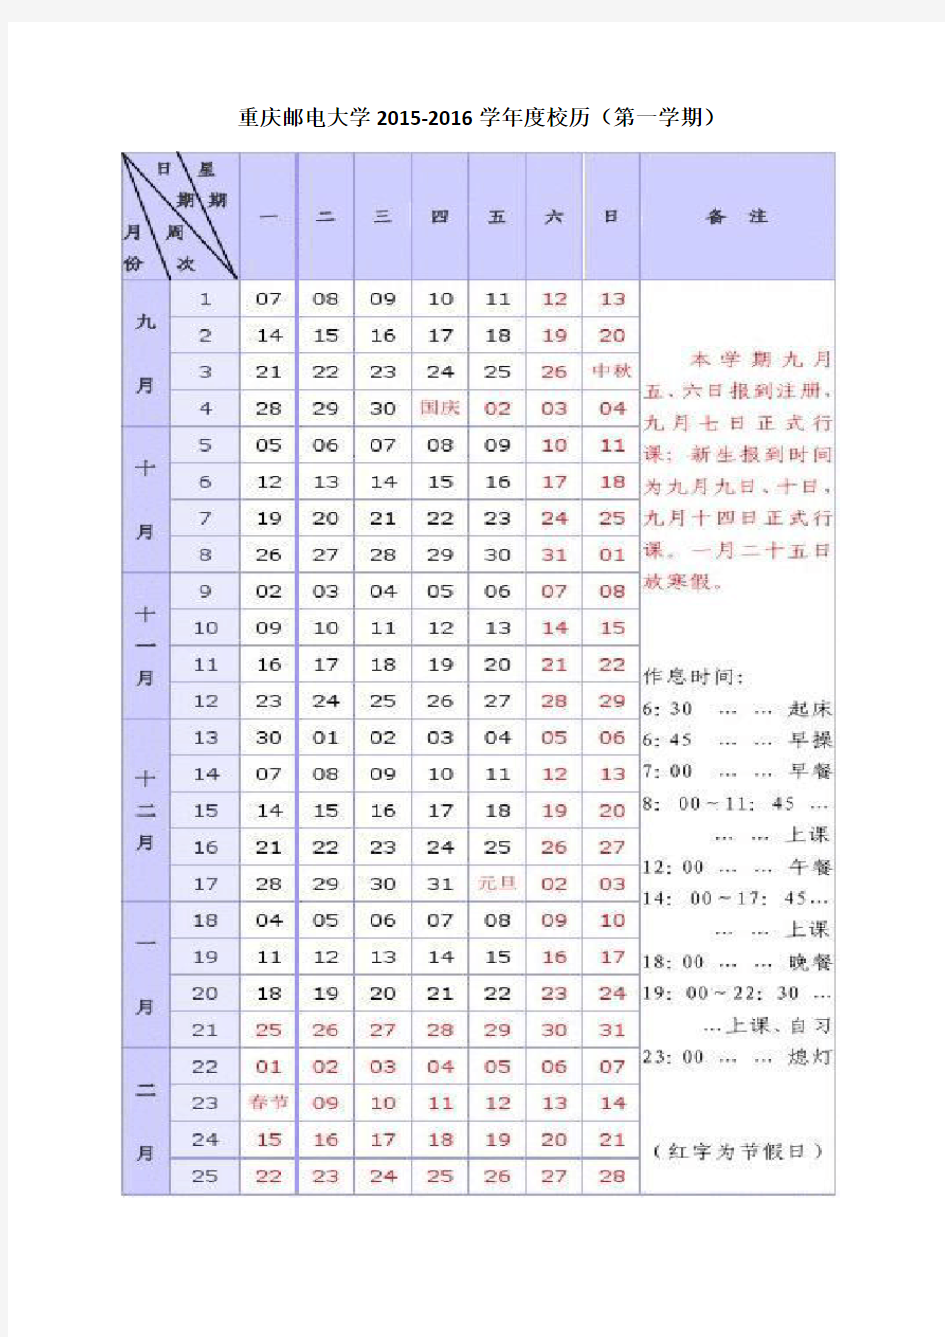 重庆邮电大学2015-2016学年度校历